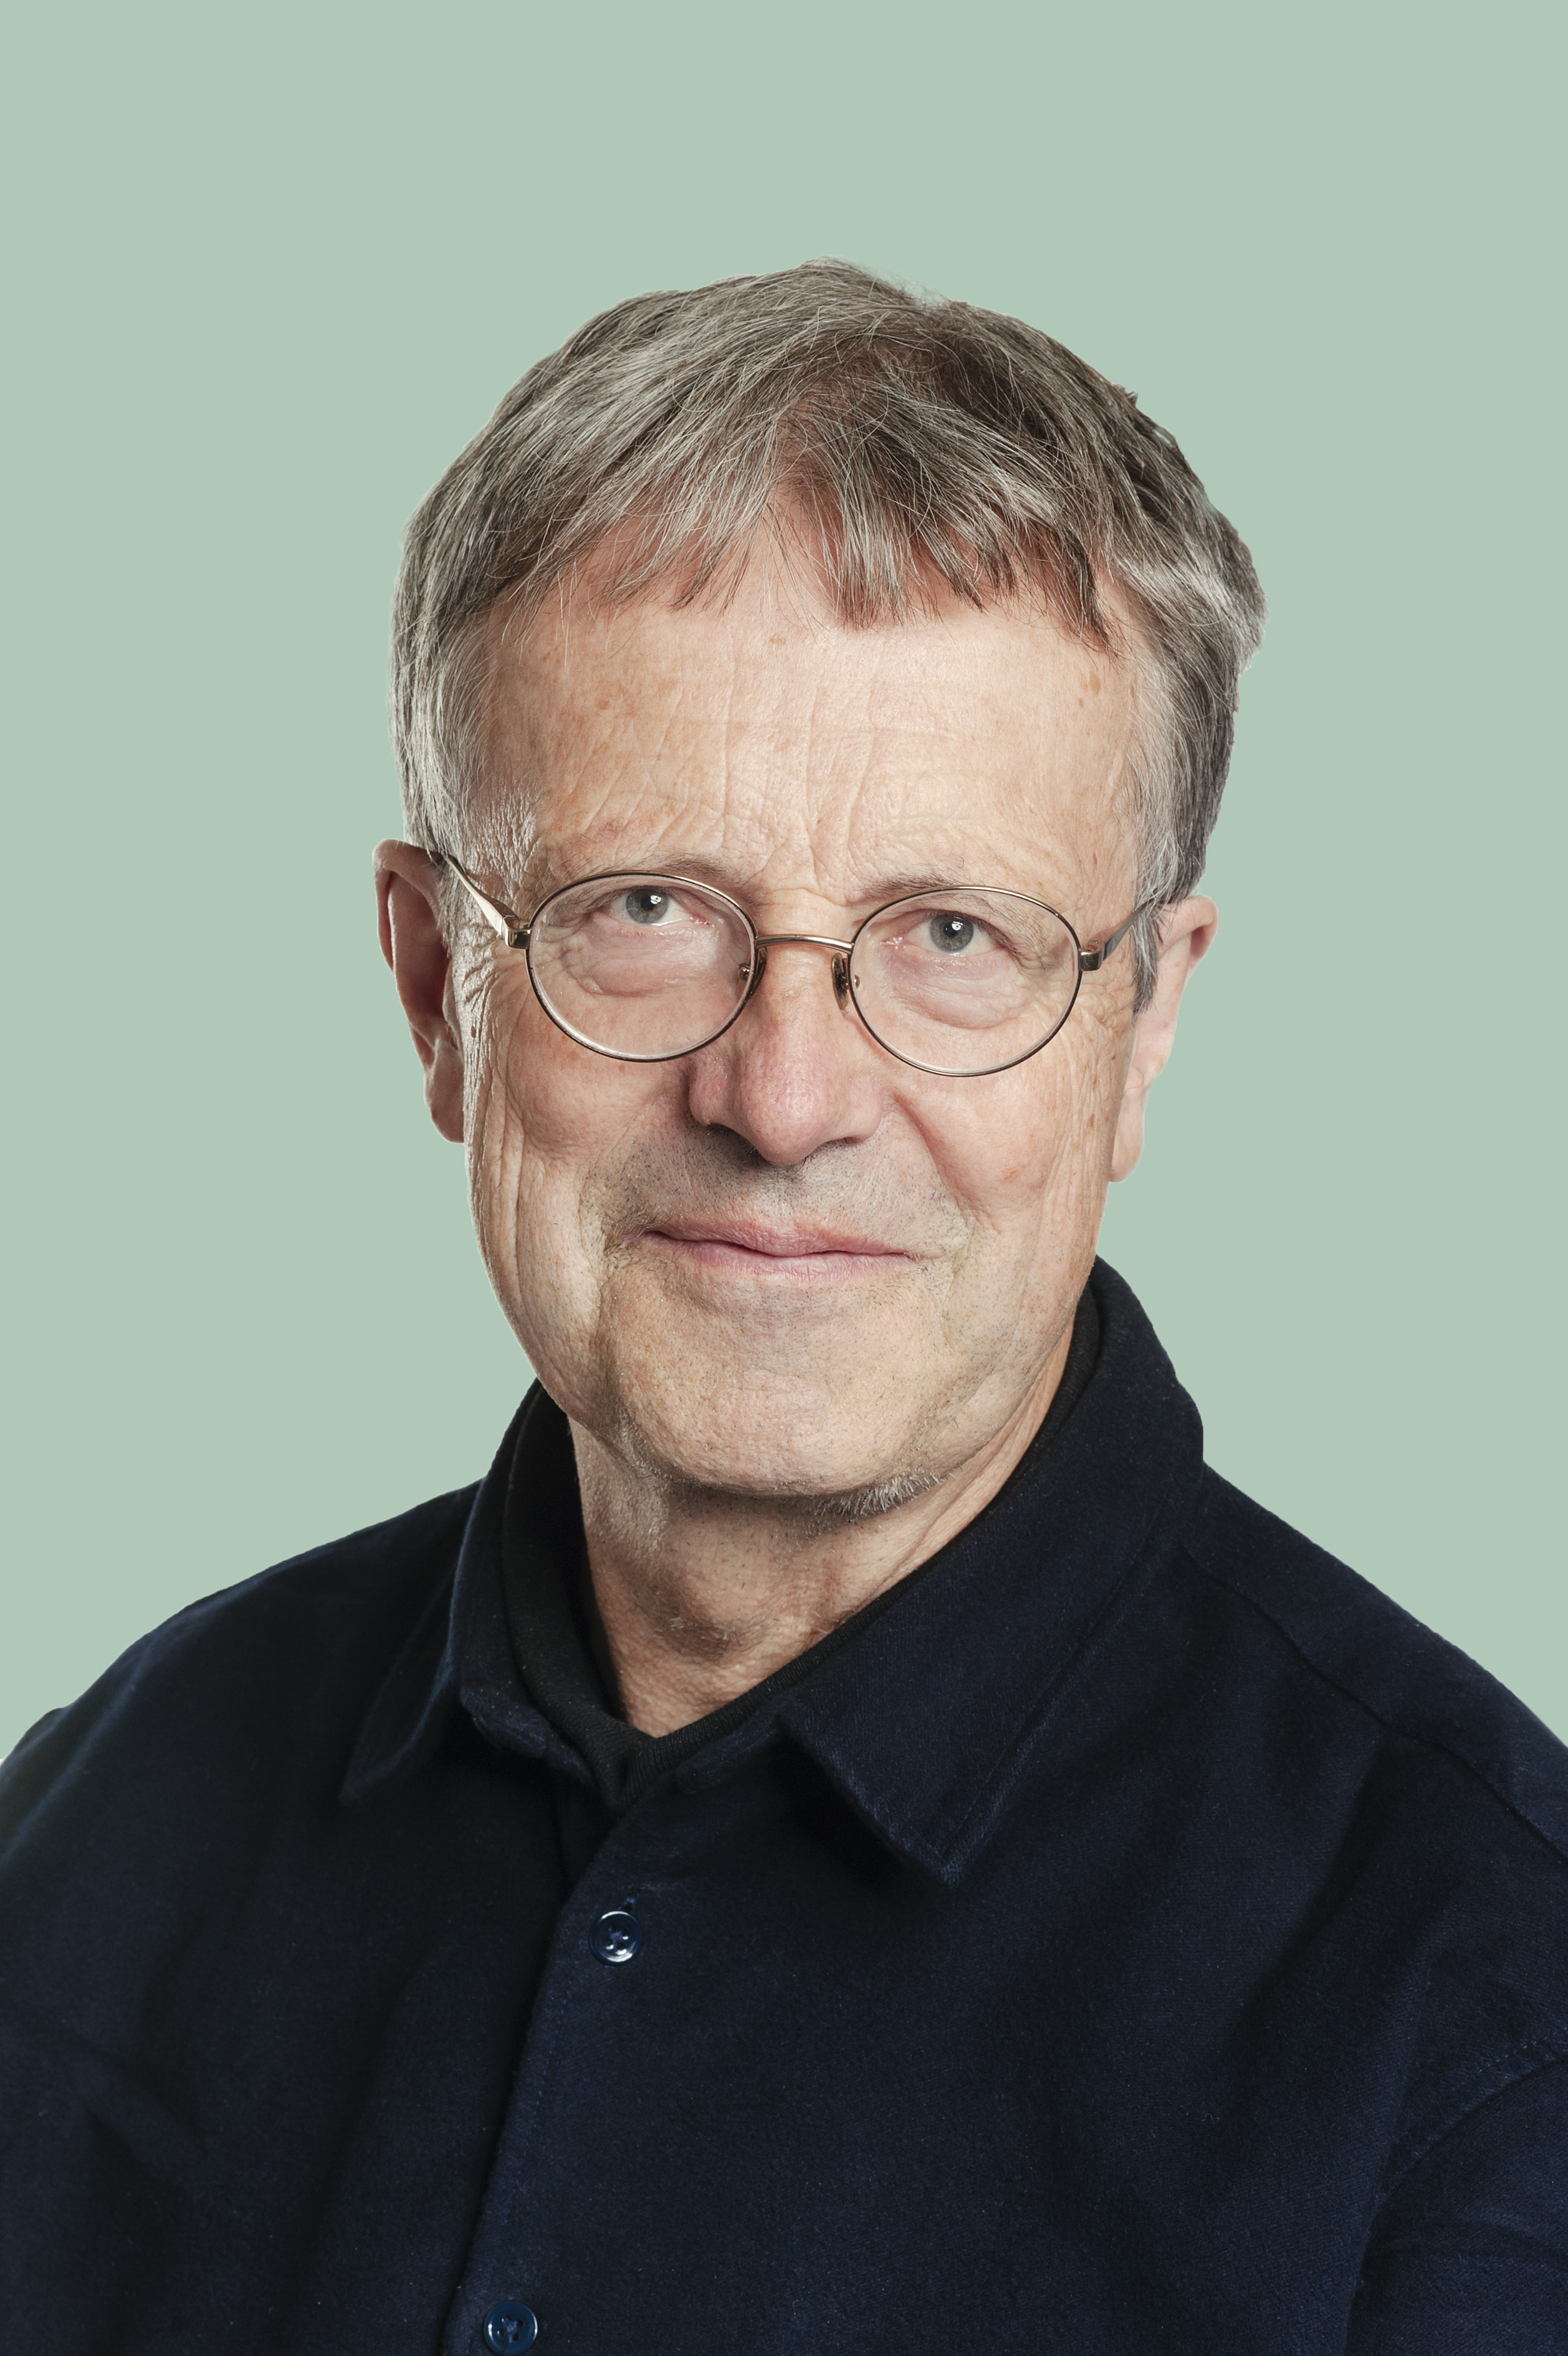 Arne Øgaard